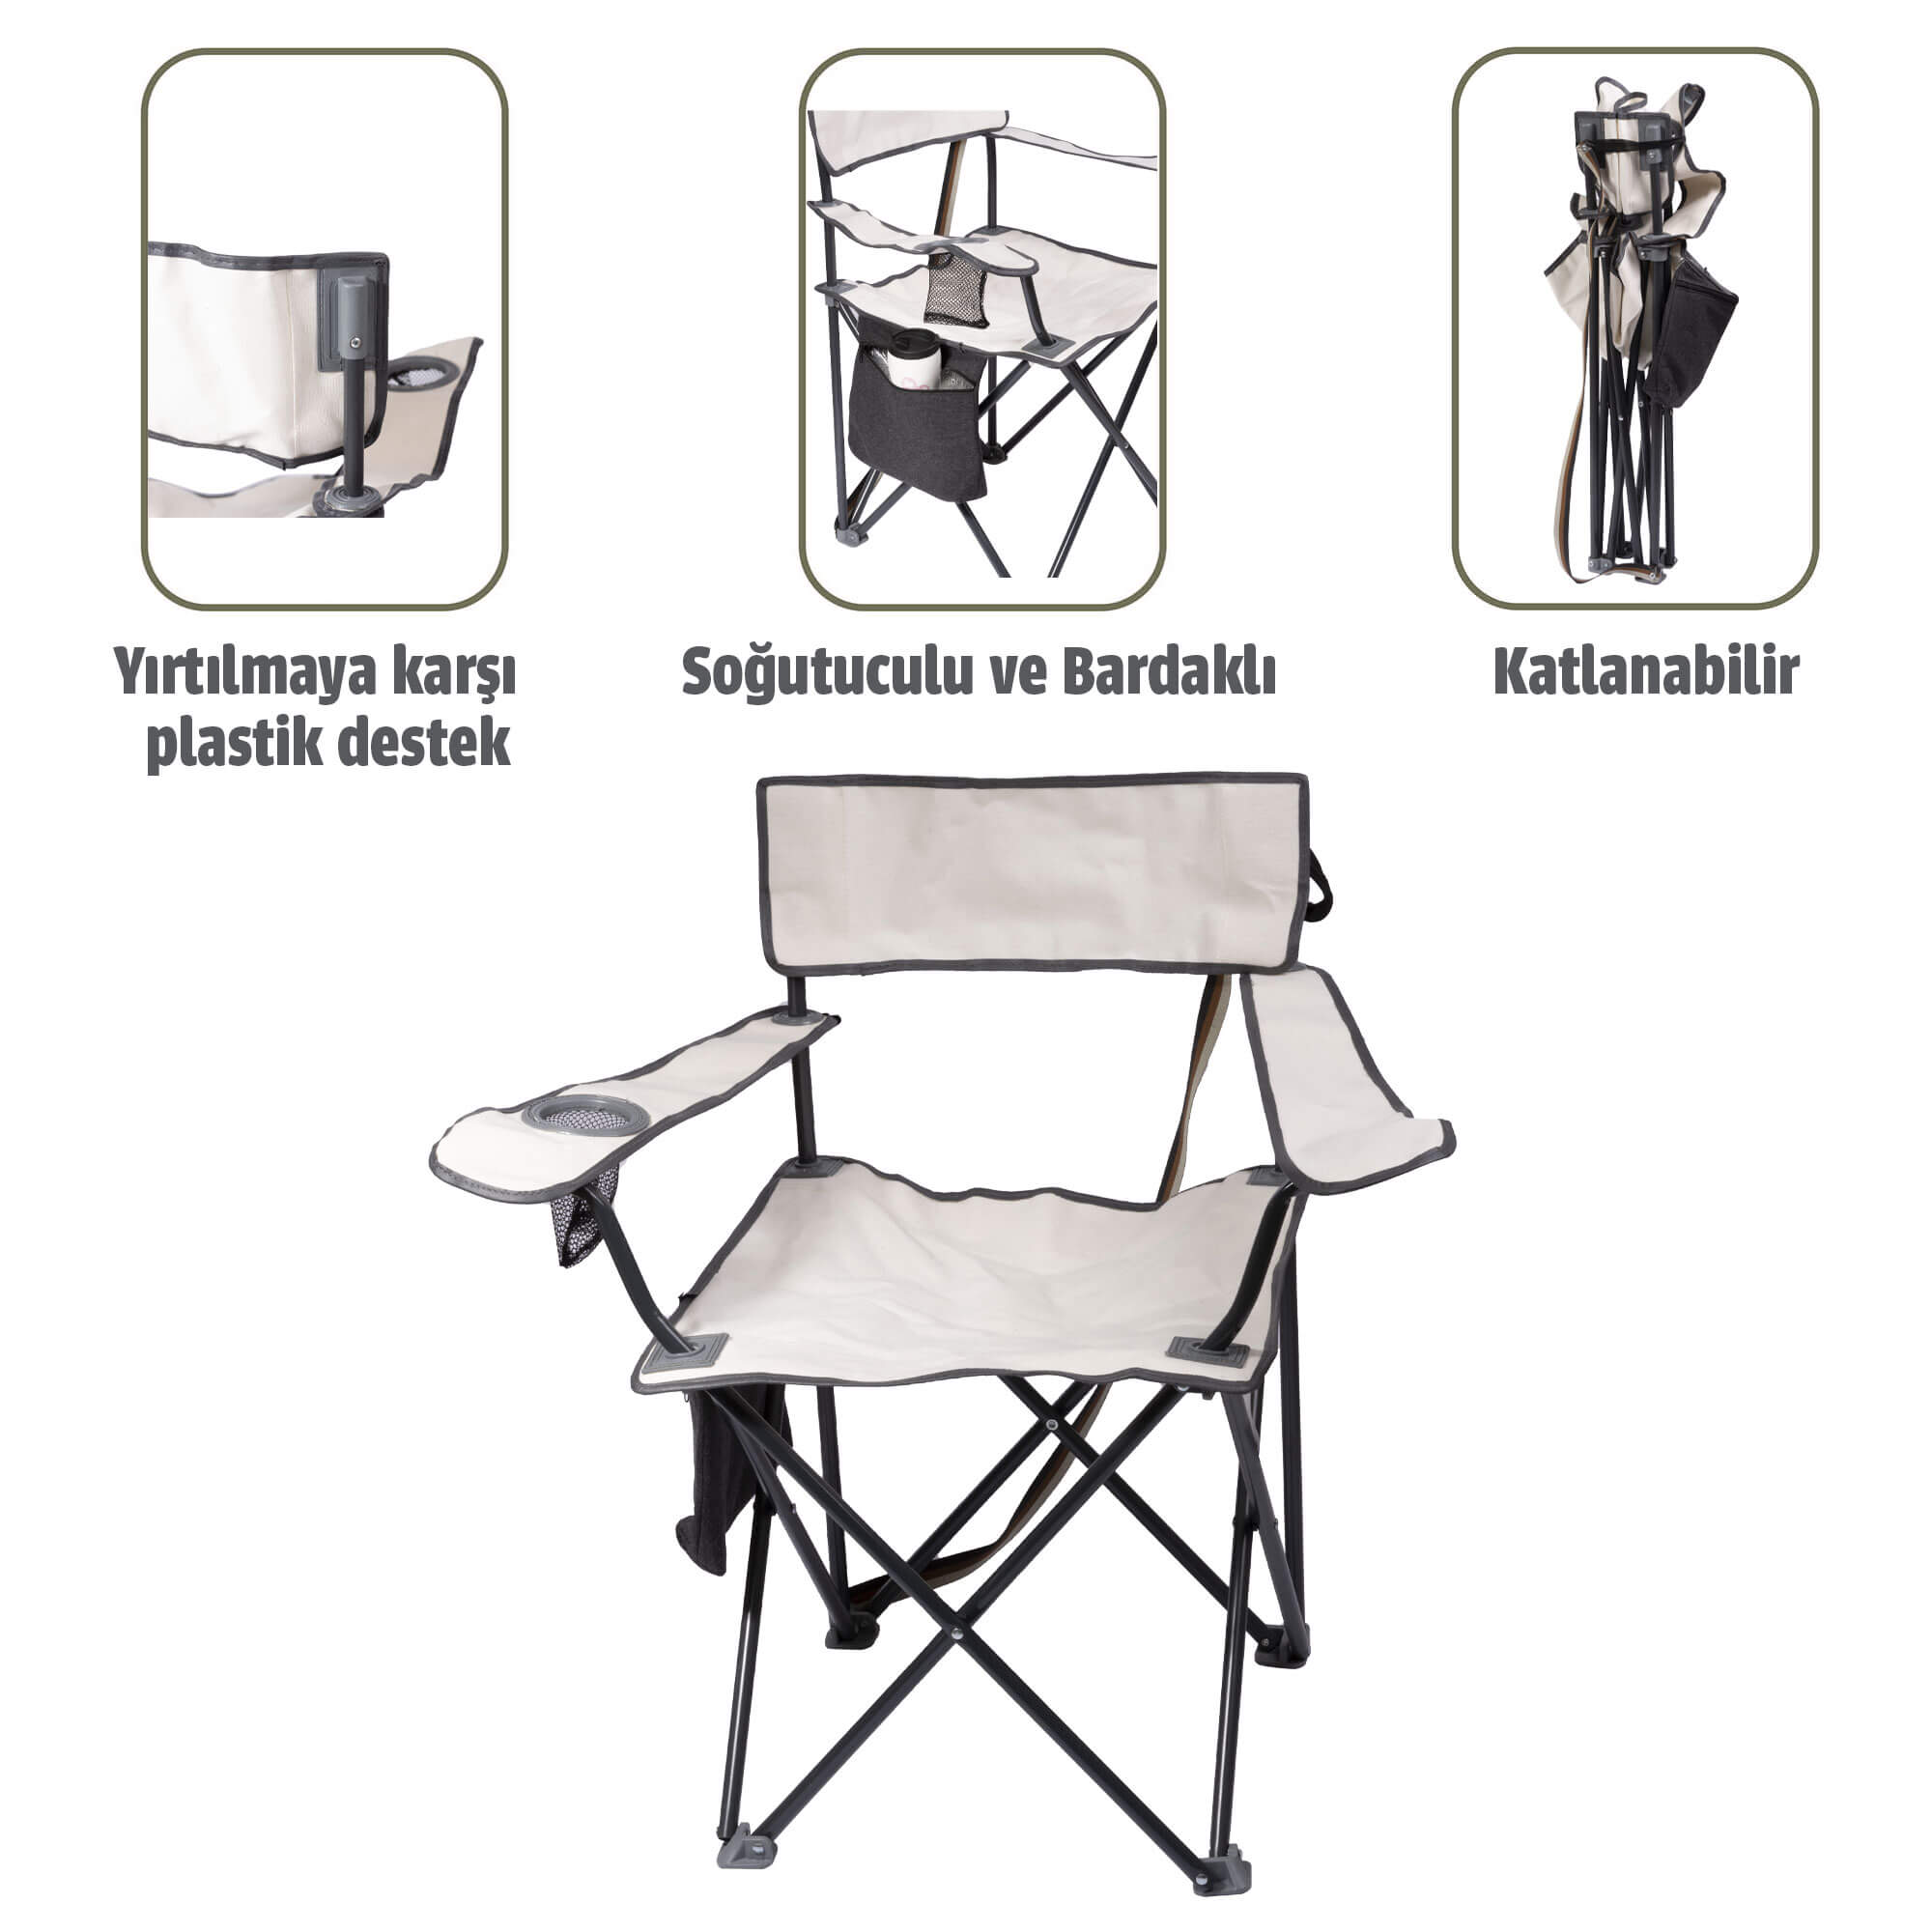 Albastar Soğutuculu ve Bardaklı Kamp Sandalyesi BEYAZ - 2Lİ 